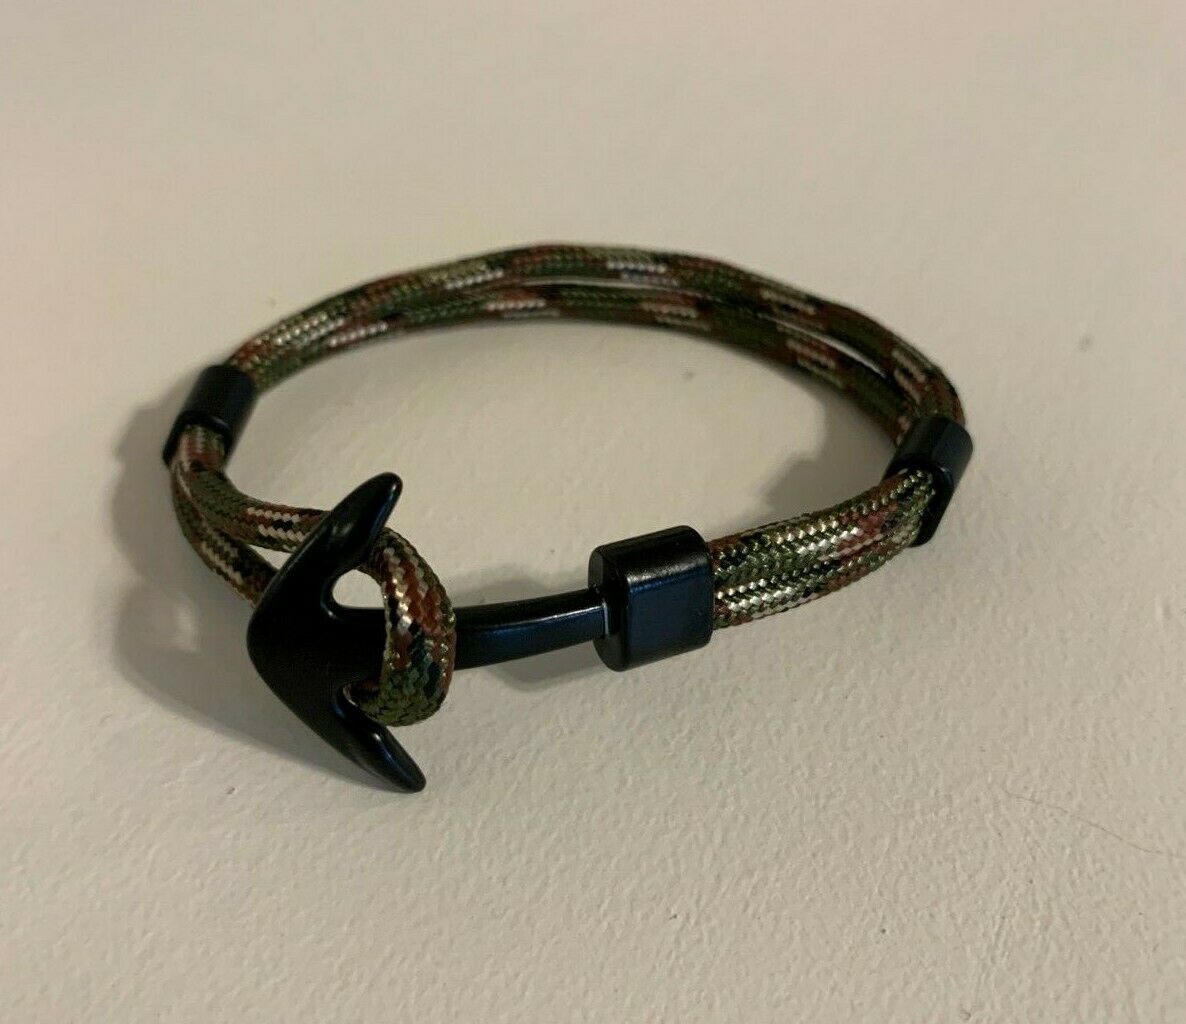 Anchor Cuff Bracelet - ArmyGrn/Black